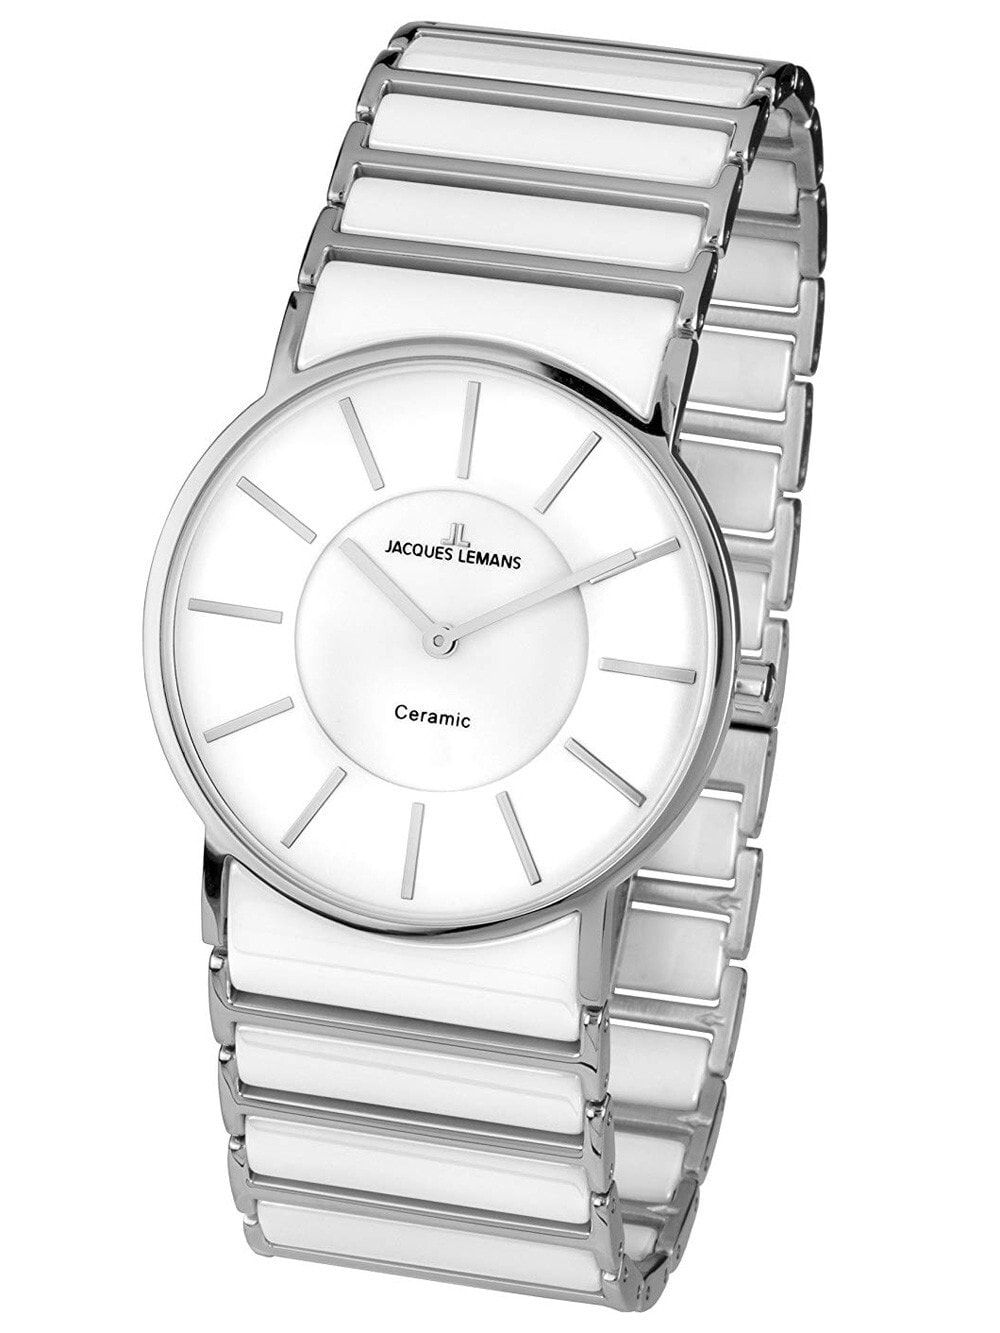 Женские наручные кварцевые часы Jacques Lemans Циферблат белого цвета,  установлено сапфировое стекло. Звенья браслета сделаны из высокотехнологичной керамики.  На браслет установлена надежная застежка-клипса.